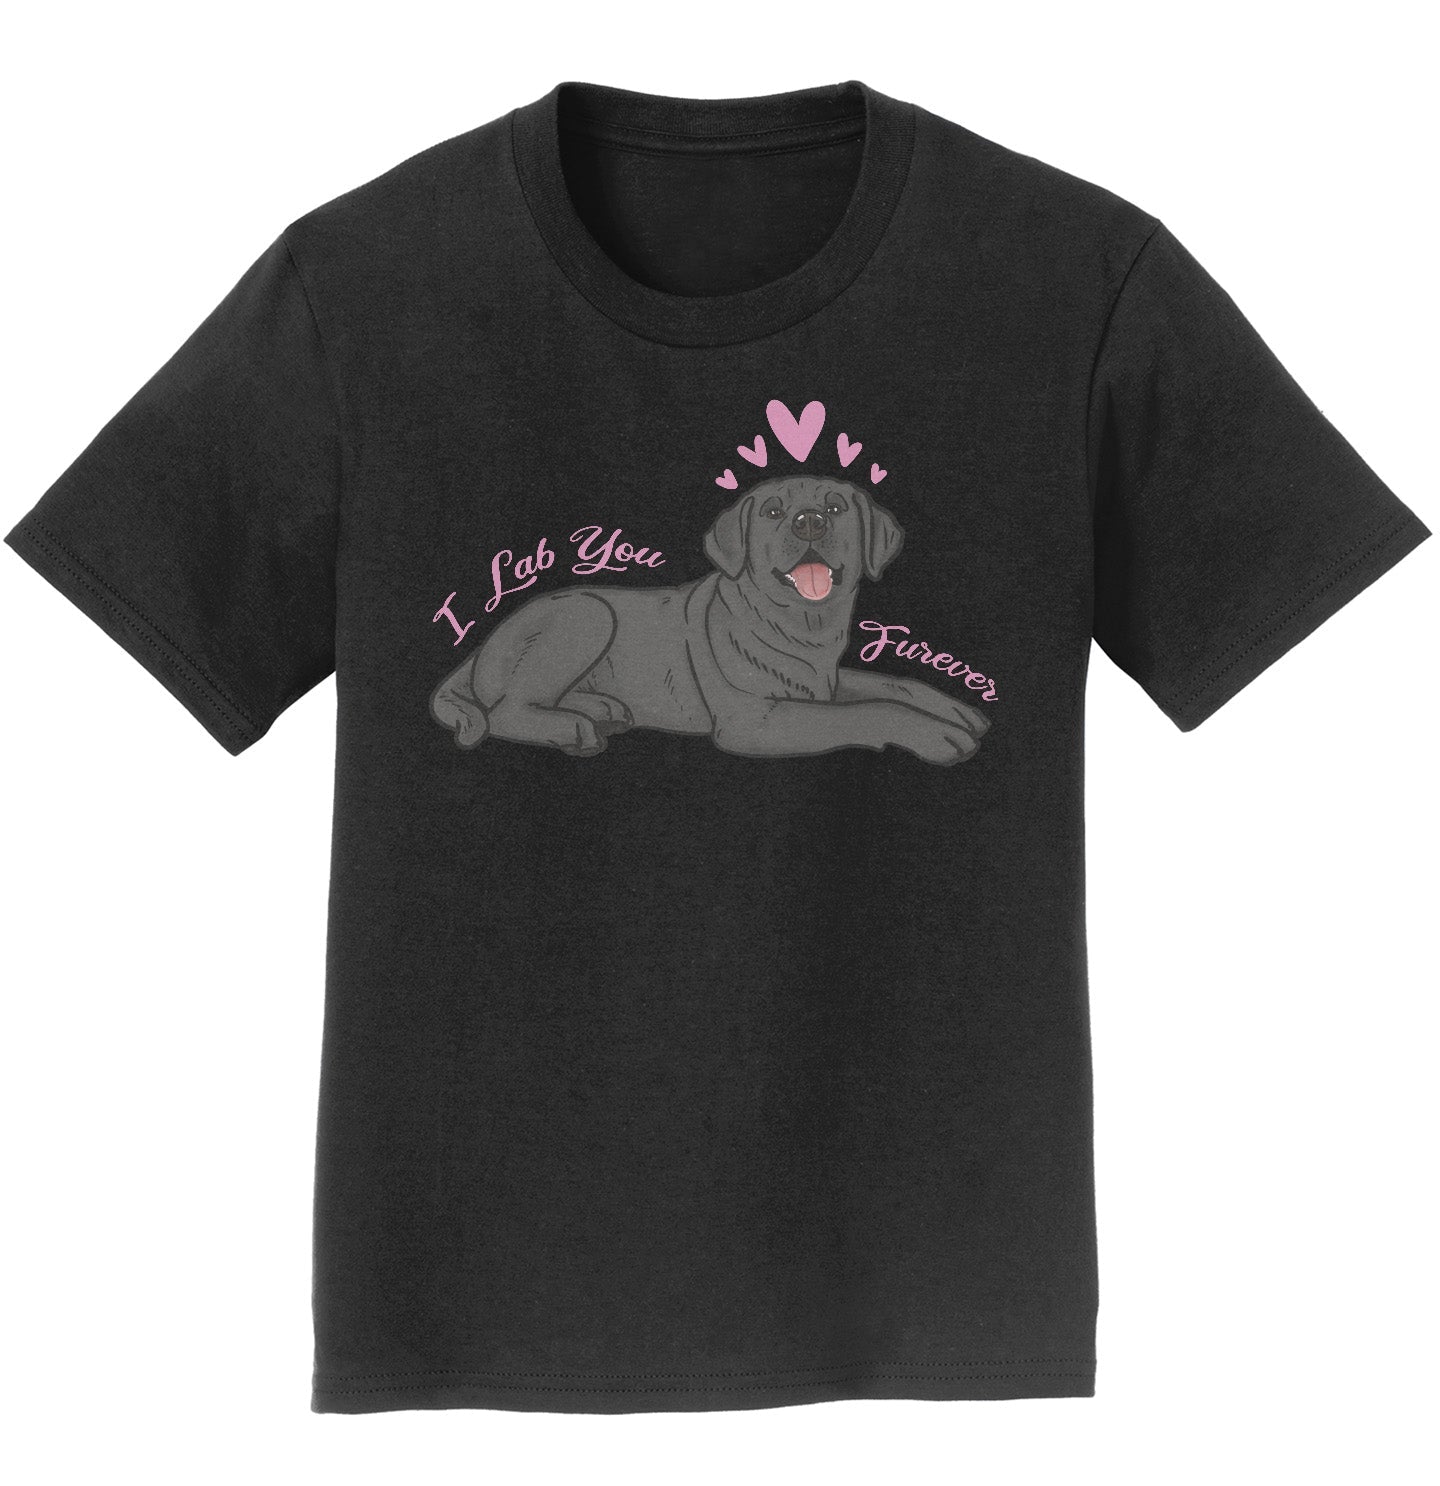 Labradors.com - Black Lab You Forever - Kids' Unisex T-Shirt